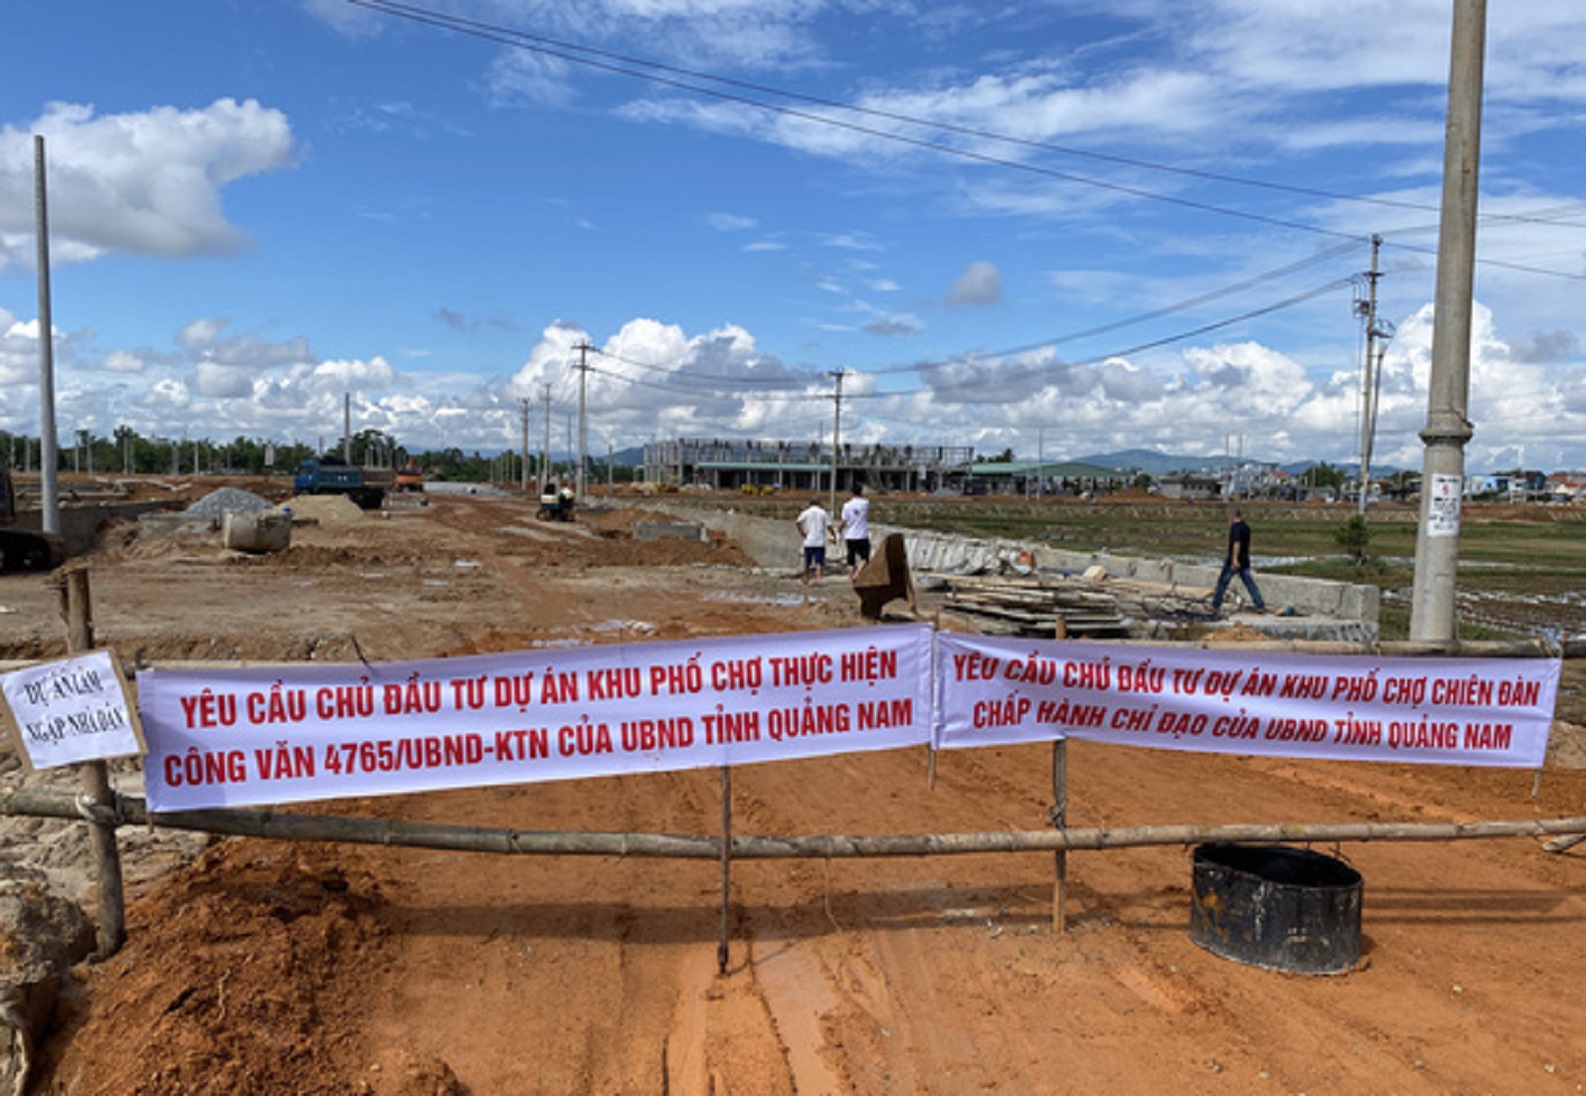 Quảng Nam: Hàng trăm hộ dân cầu cứu chính quyền vì bị ảnh hưởng bởi Dự án phố chợ Chiên Đàn